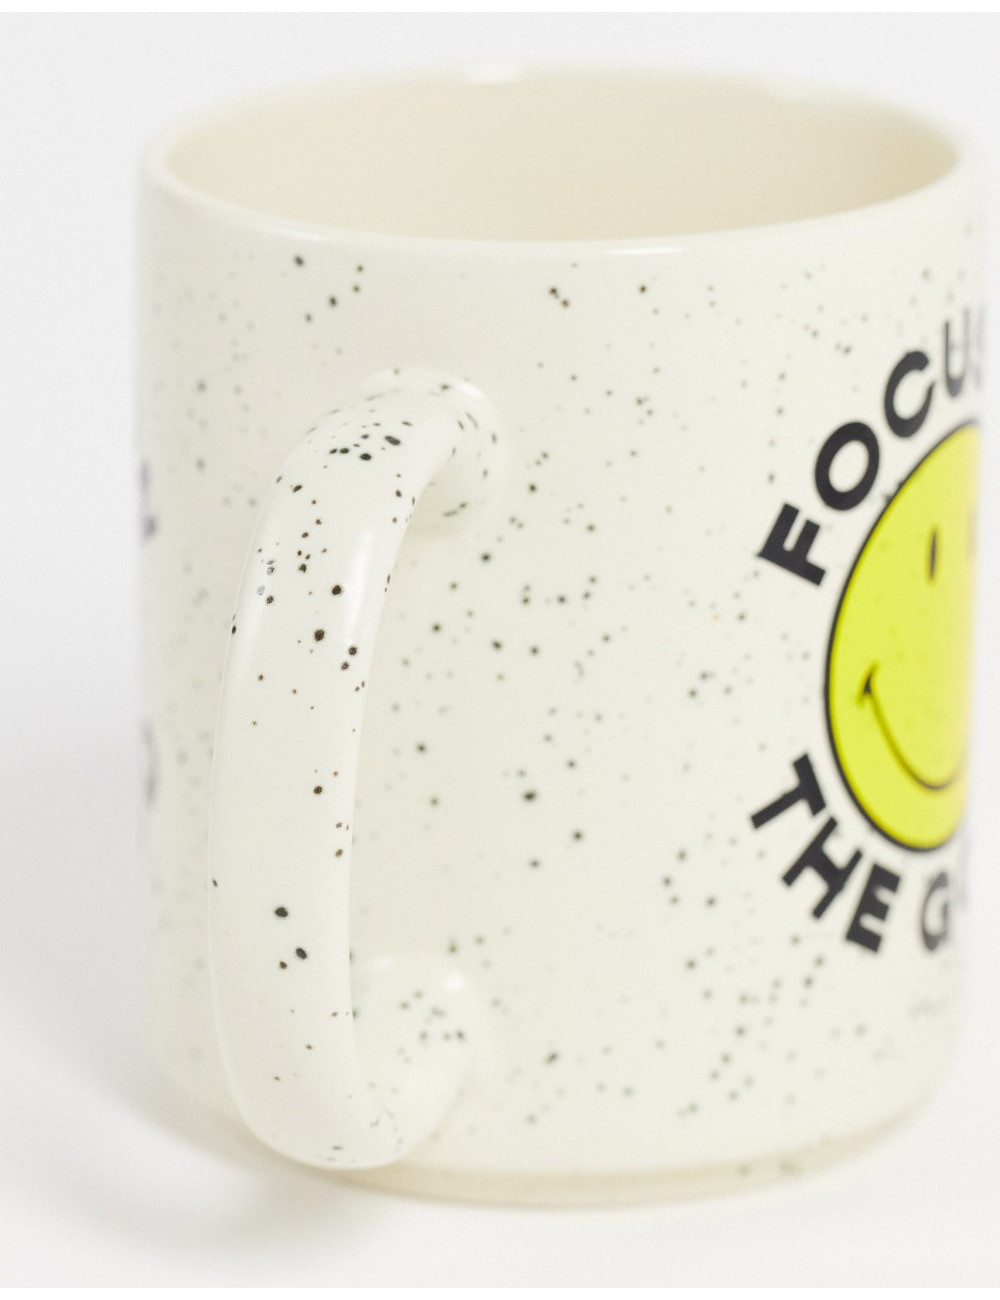 Typo x Smiley mug with...